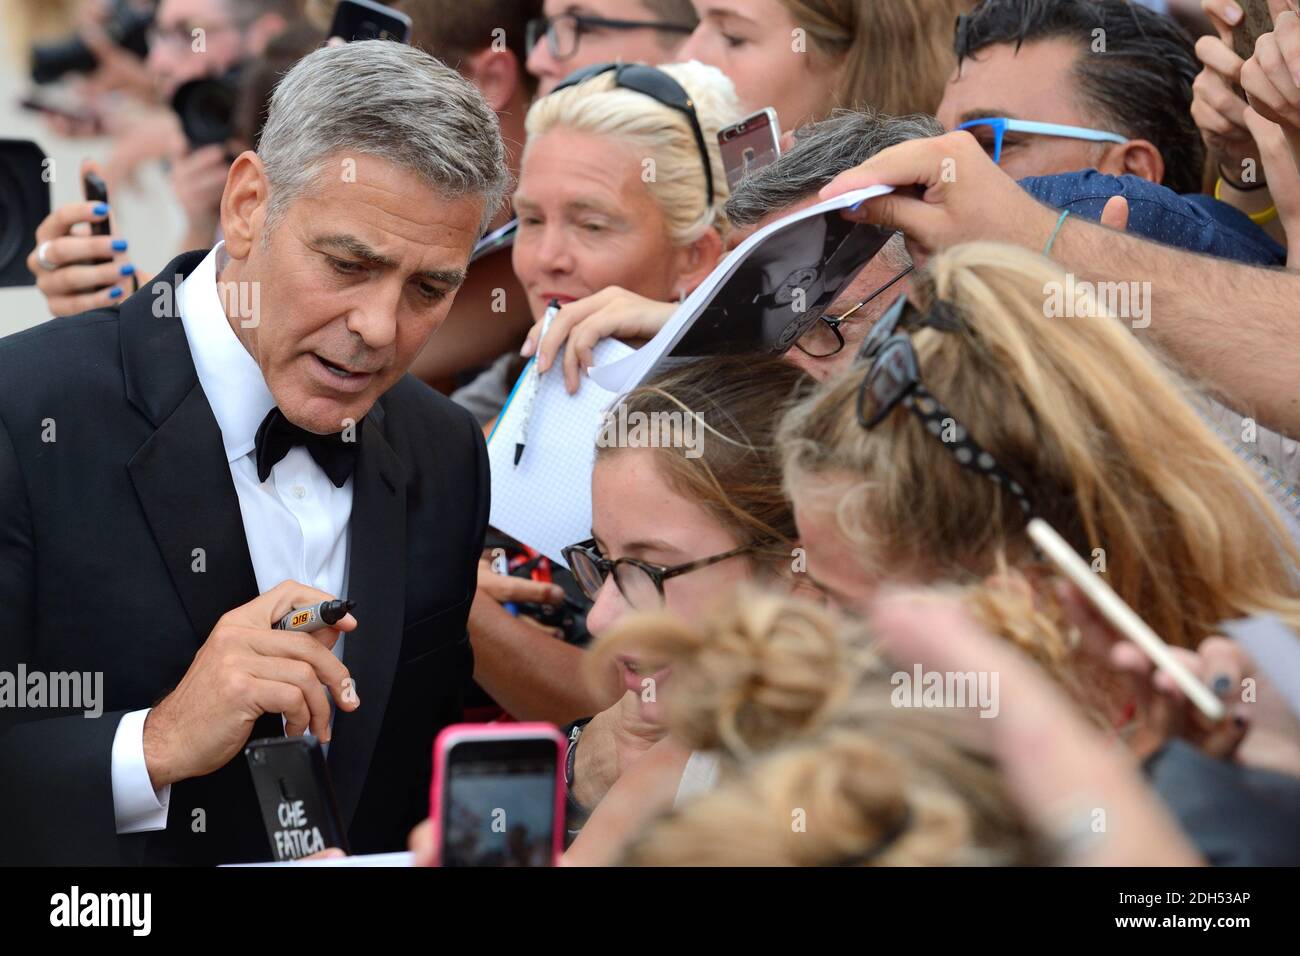 George Clooney partecipa alla Premiere Suburbicon durante il 74a Festival Internazionale del Cinema di Venezia (Mostra di Venezia) al Lido di Venezia il 02 settembre 2017. Foto di Aurore Marechal/ABACAPRESS.COM Foto Stock